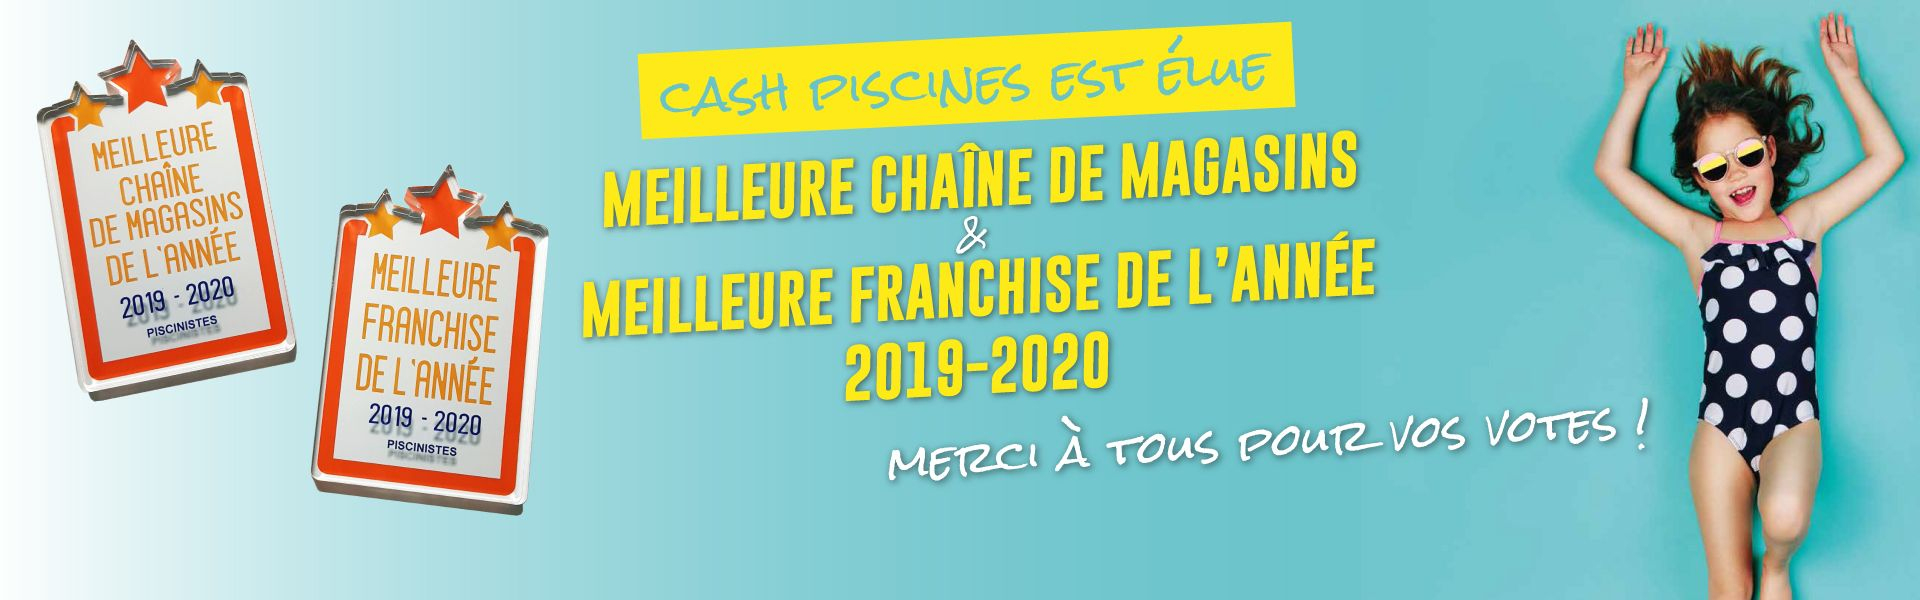 Cash Piscines - Tout Pour La Piscine &amp; Spas Gonflables ... intérieur Cash Piscine Bourg De Peage